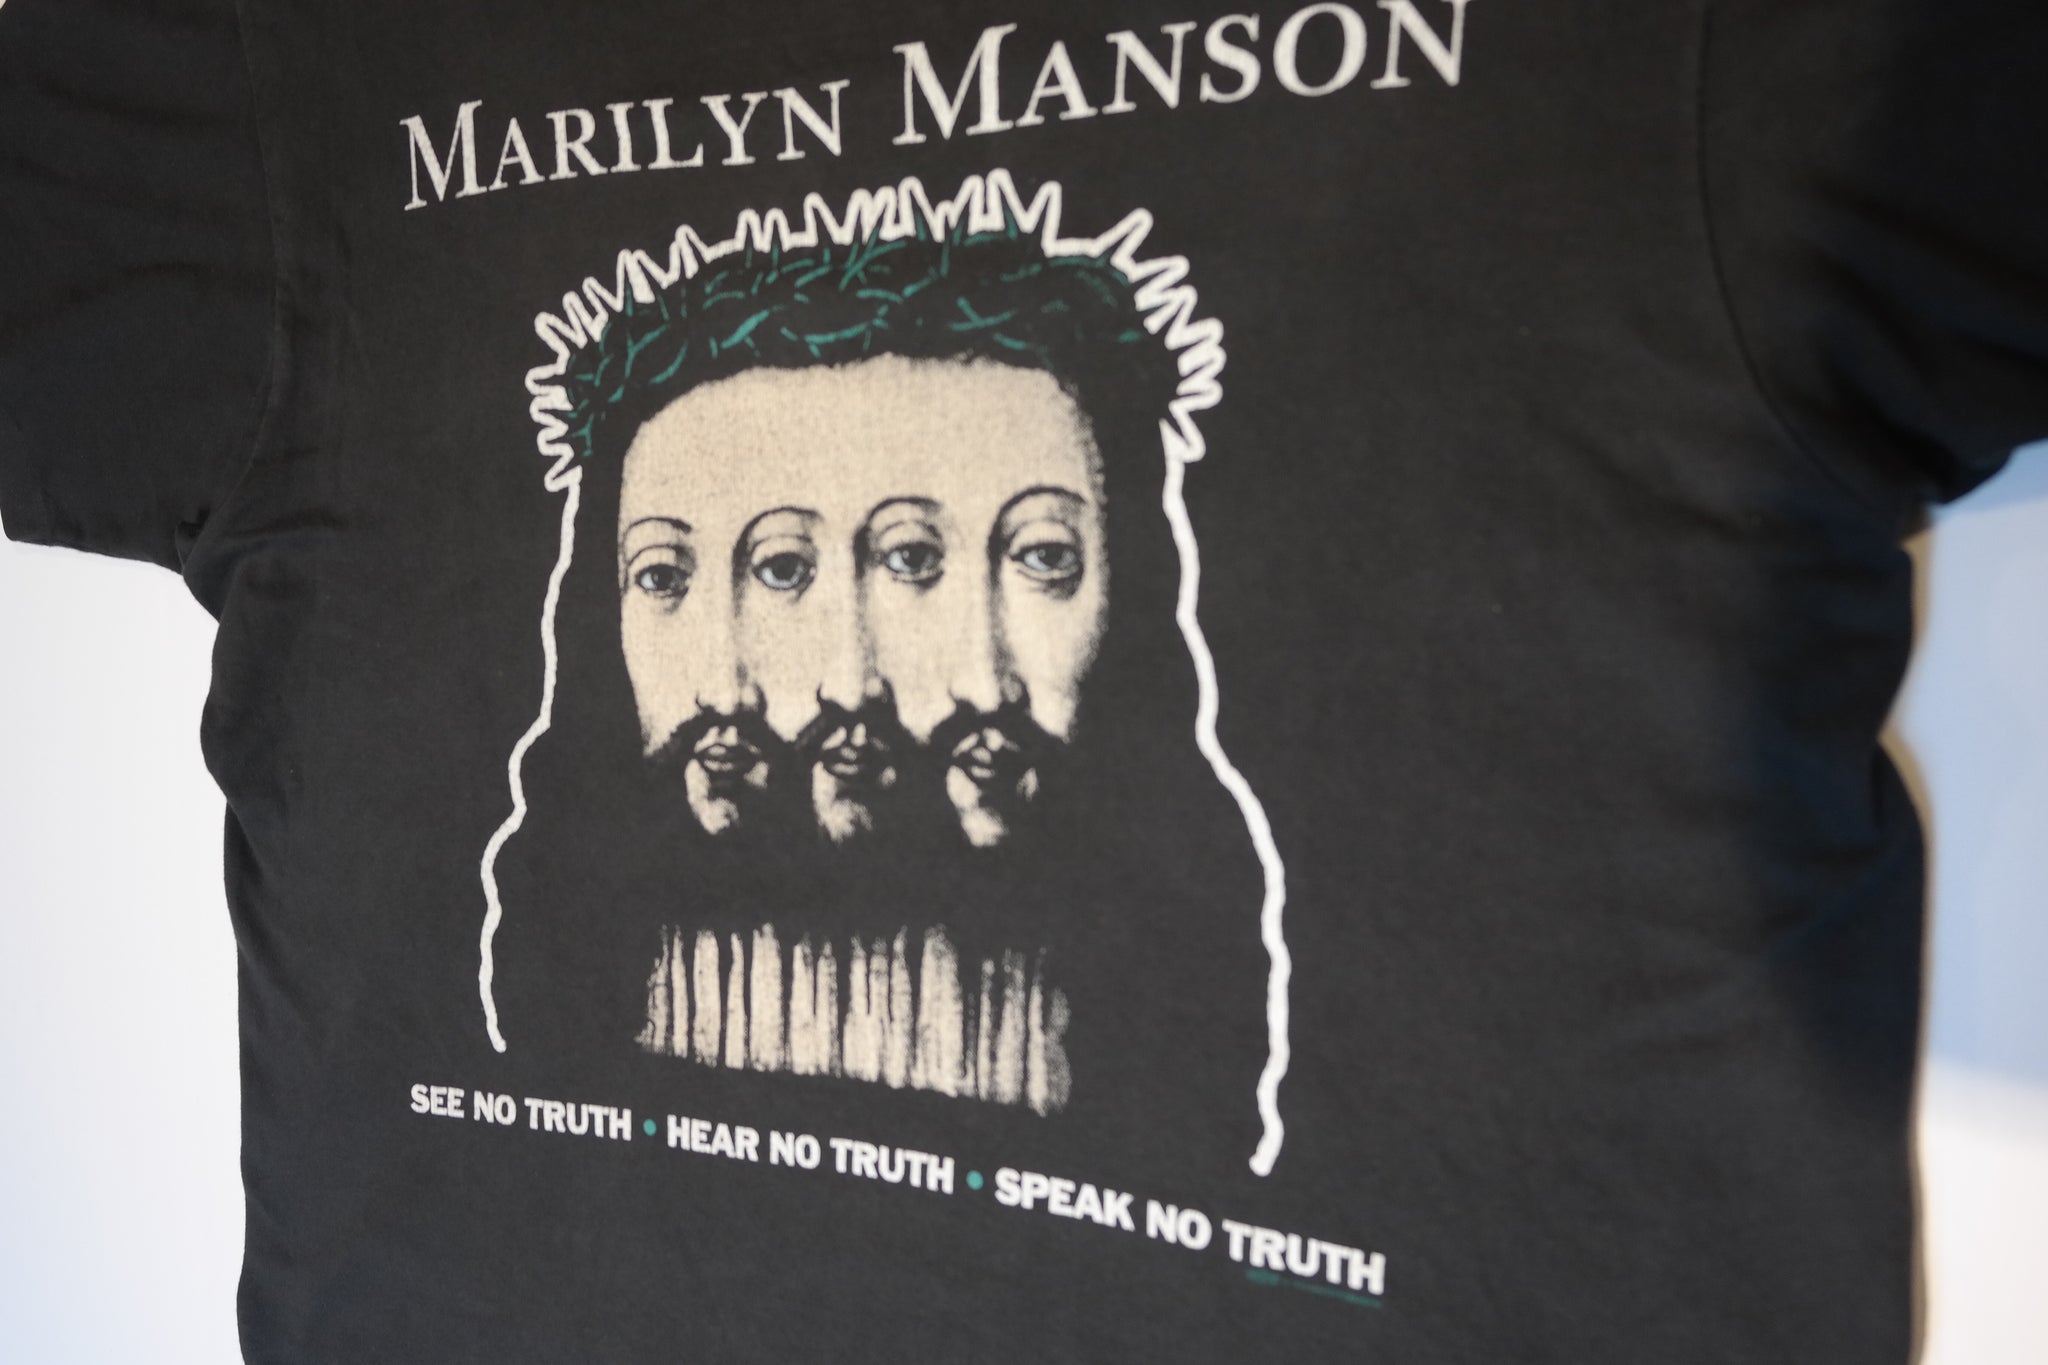 marilyn manson believe t shirt